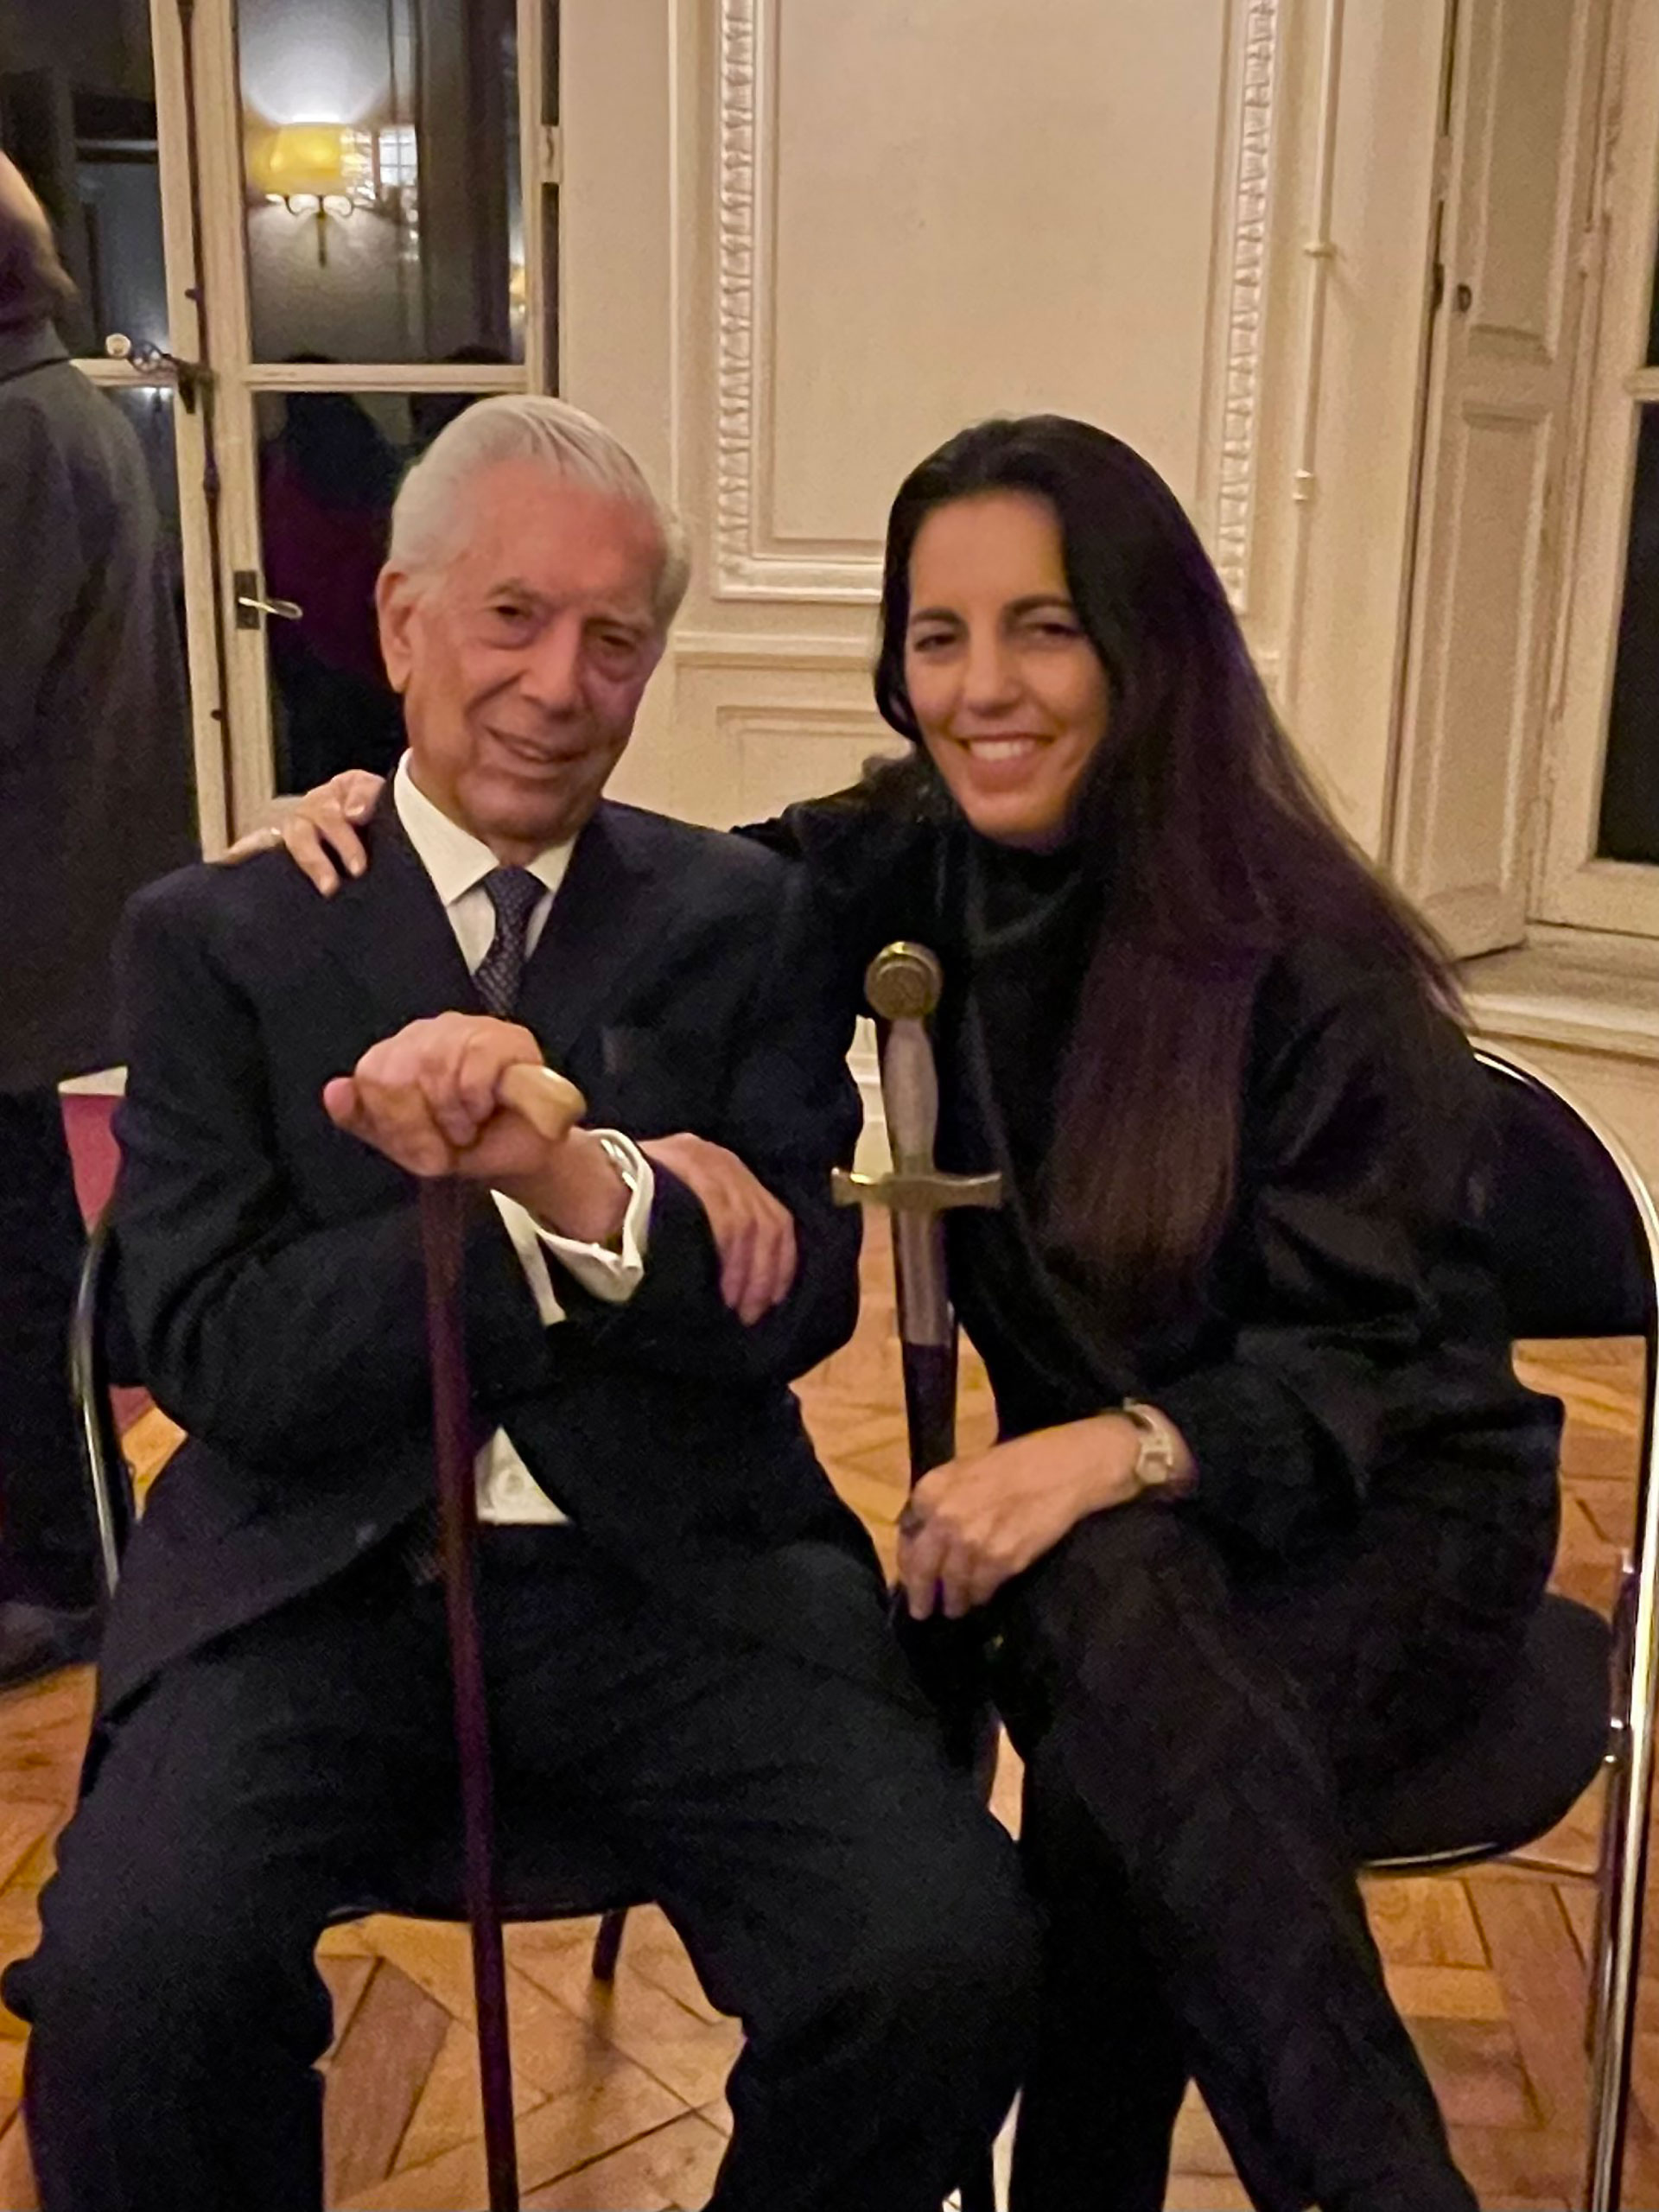 Mario Vargas Llosa posa con su hija Morgana, durante la ceremonia de entrega de la espada como miembro de la Academia Francesa (Foto: Twitter @morganavll)